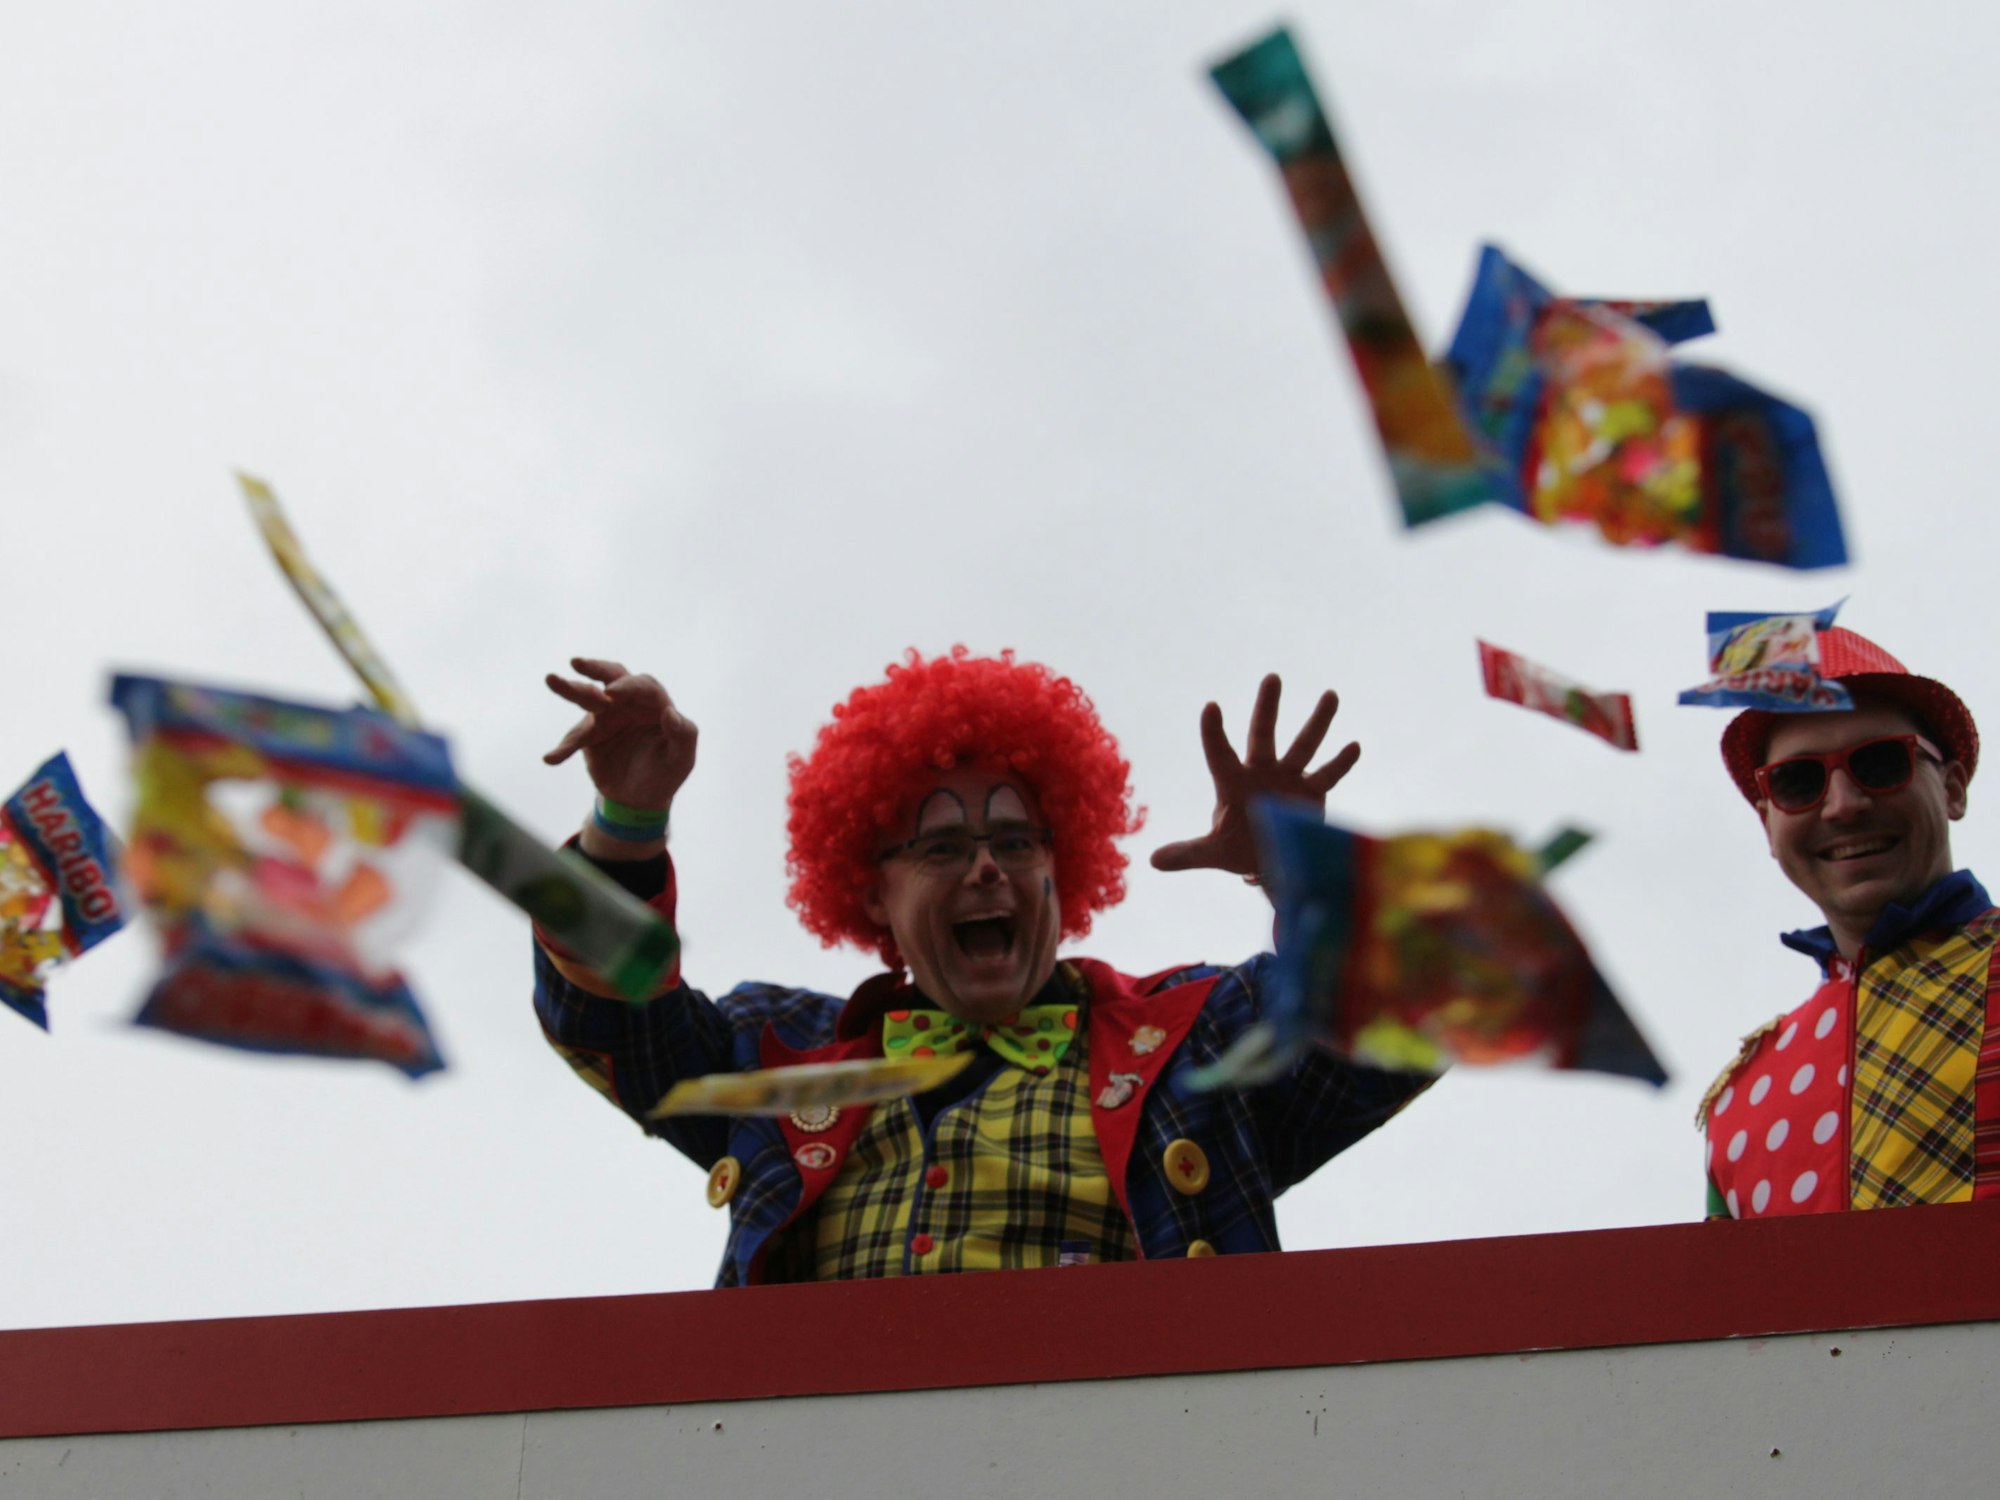 Zwei Clowns schmeißen von einem Wagen Kamelle zu den Zuschauern des Karnevalszugs in Vussem.